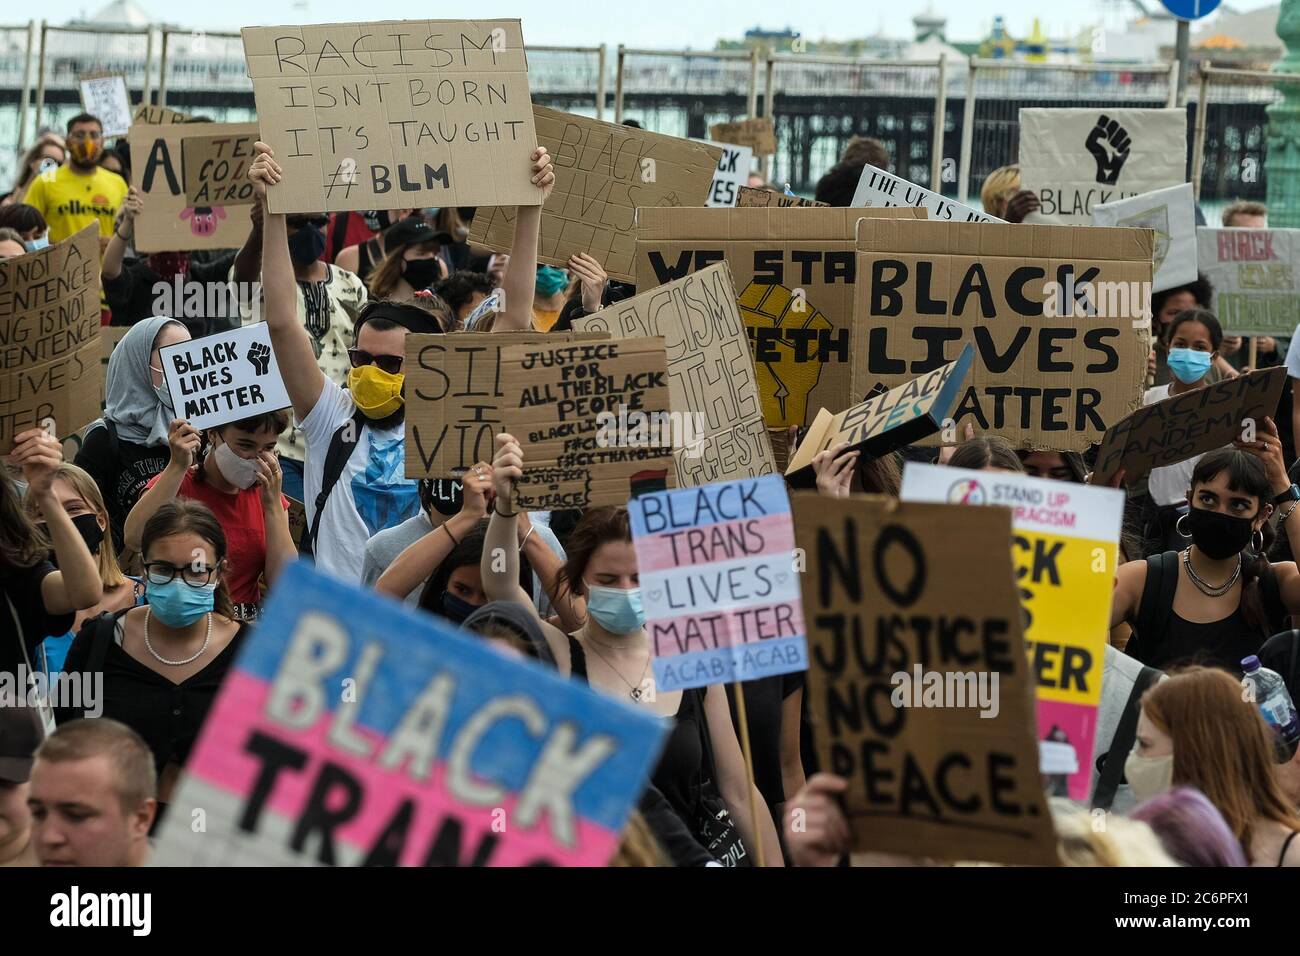 Brighton Seafront/Palace Pier, Brighton, Reino Unido. 11 de julio de 2020. Black Lives importan marchas de protesta a lo largo del paseo marítimo antes de dirigirse hacia el norte hacia la ciudad. Imagen de crédito: Julie Edwards/Alamy Live News Foto de stock